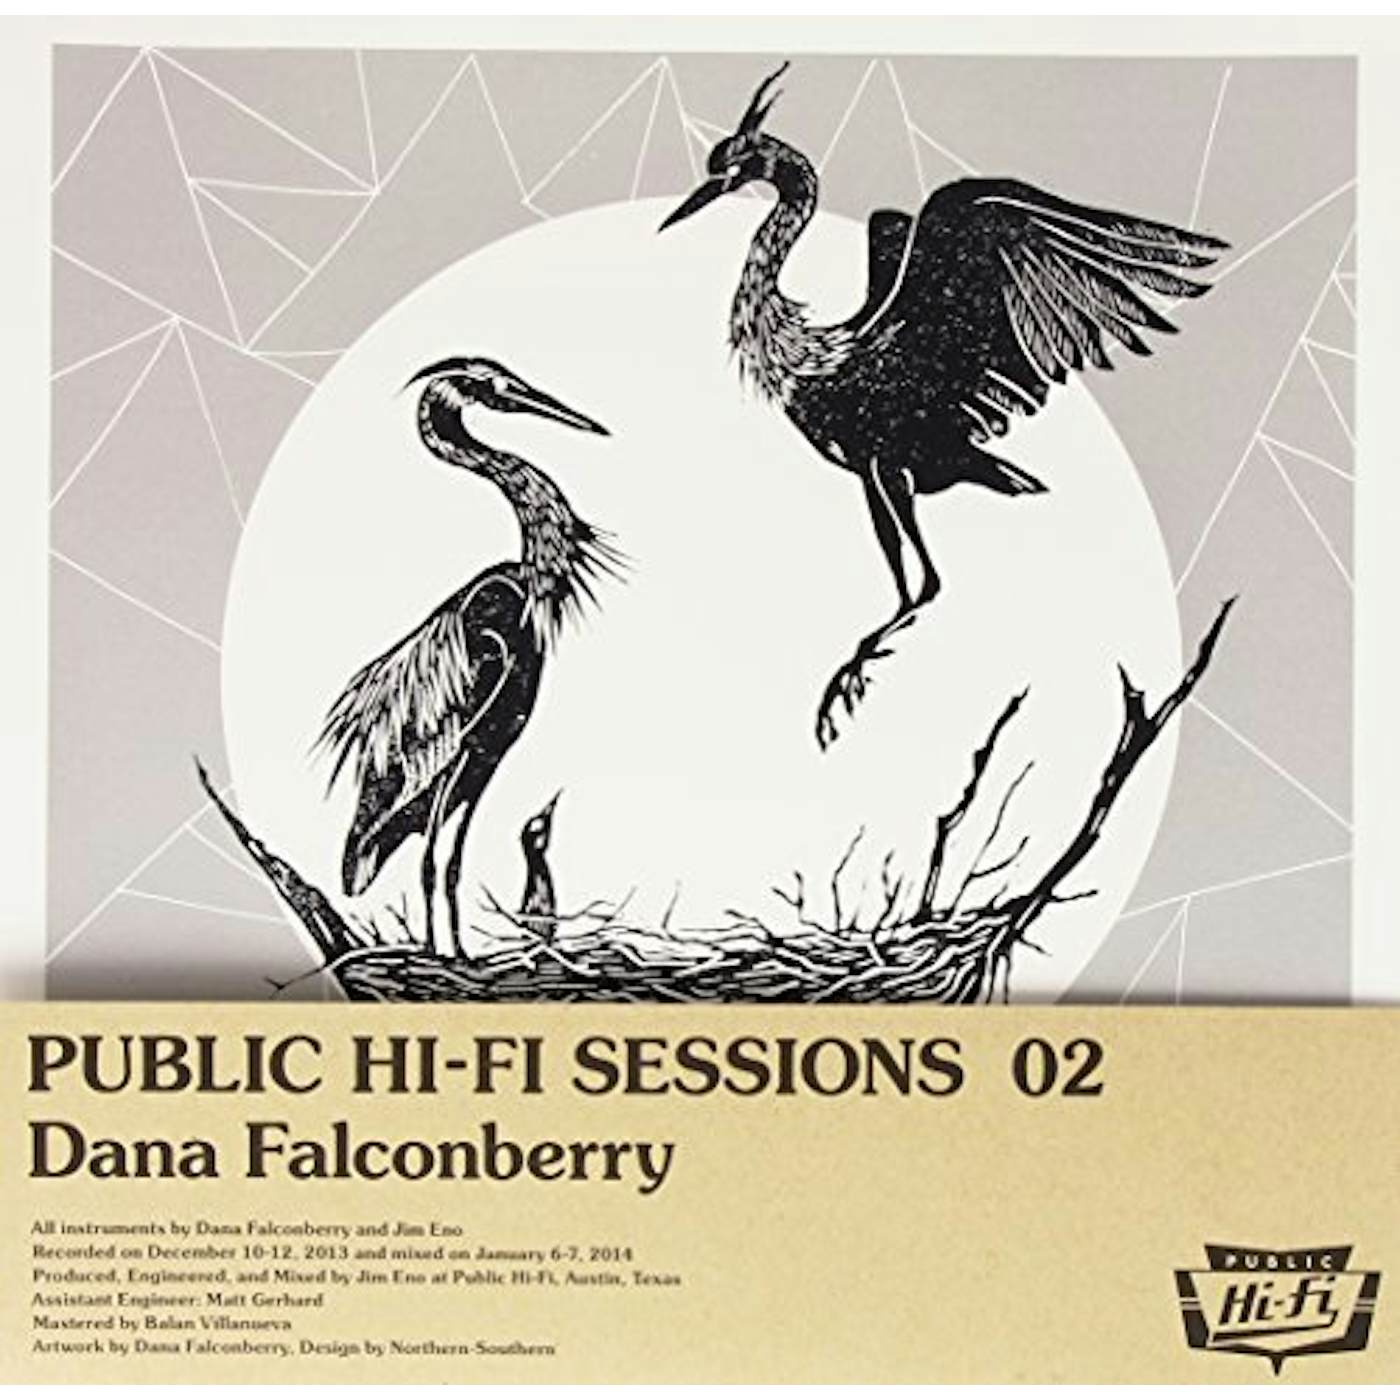 dana falconberry Public Hi-Fi Sessions 02 Vinyl Record